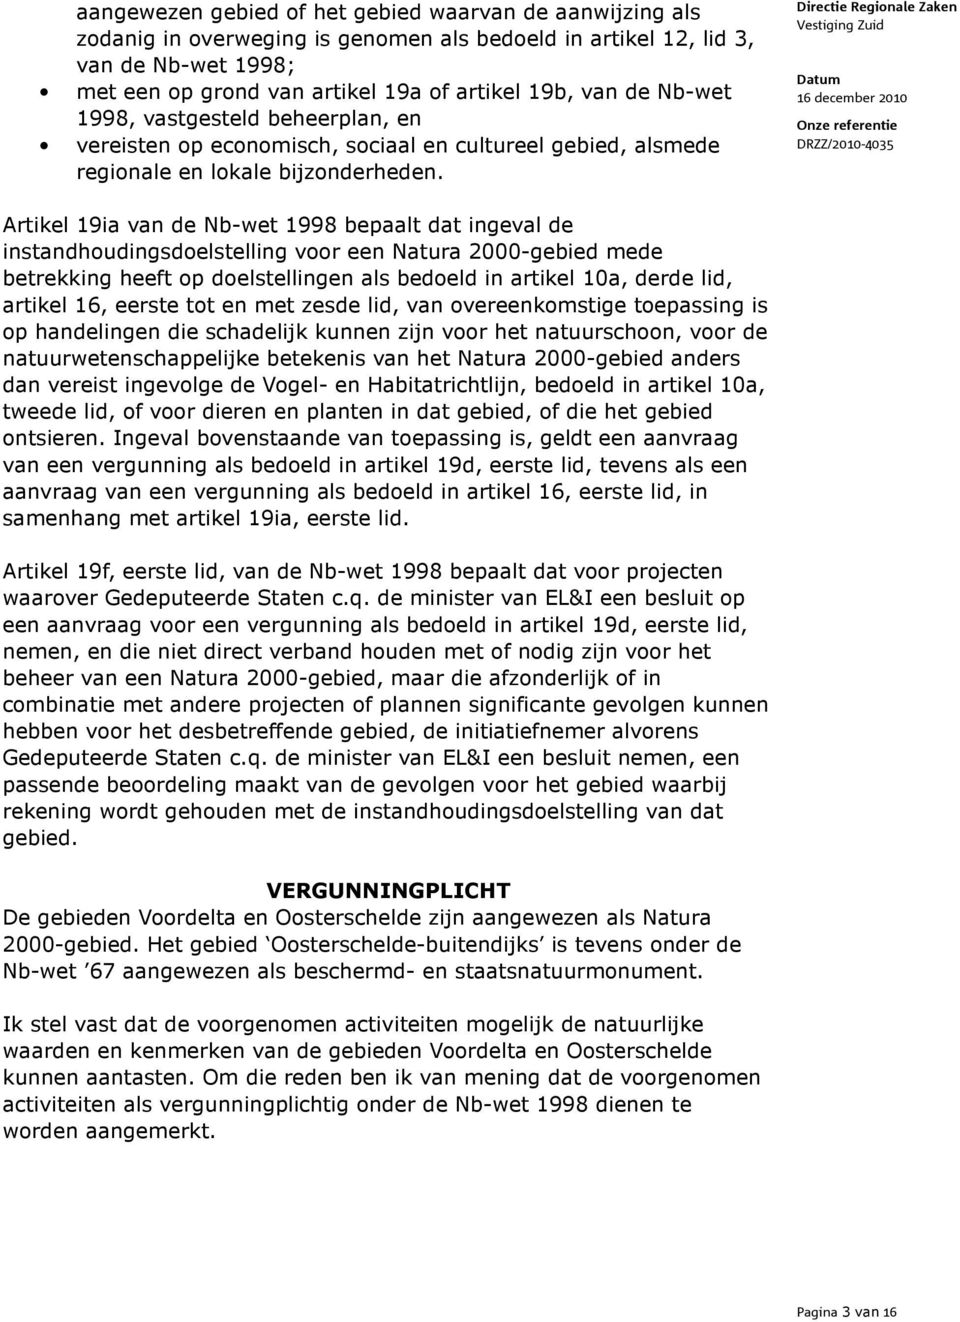 Artikel 19ia van de Nb-wet 1998 bepaalt dat ingeval de instandhoudingsdoelstelling voor een Natura 2000-gebied mede betrekking heeft op doelstellingen als bedoeld in artikel 10a, derde lid, artikel